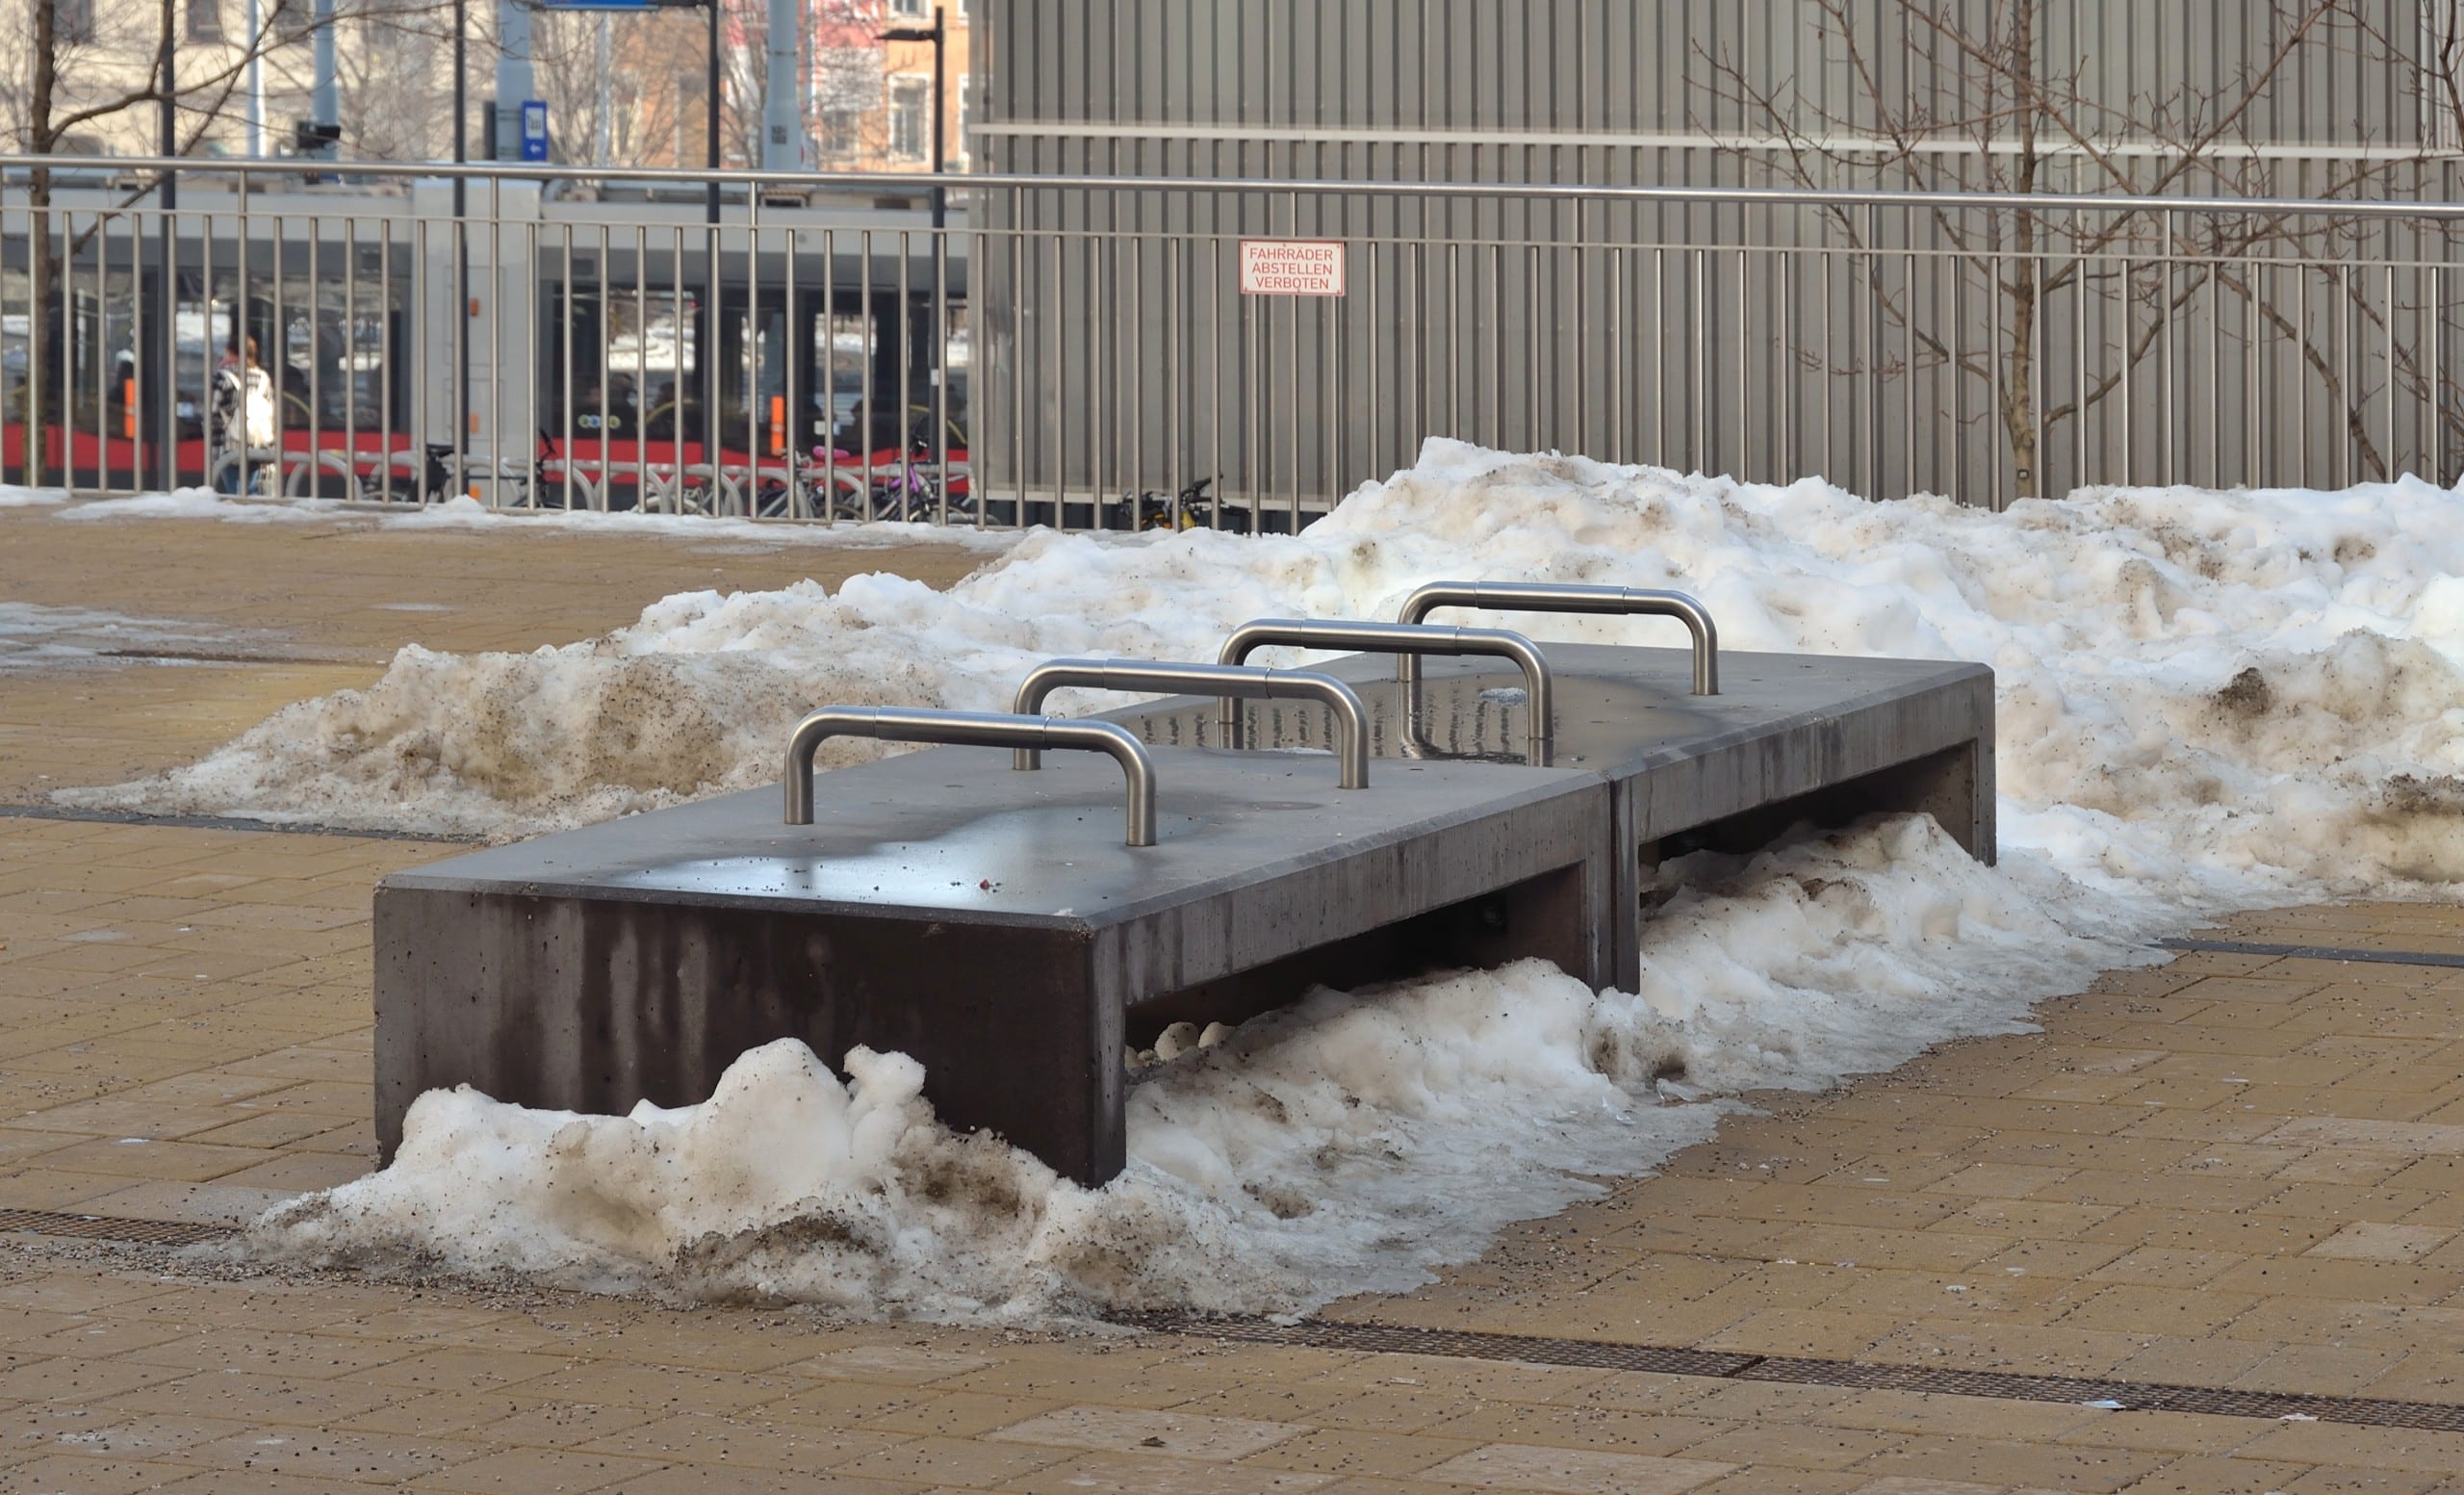 Eine Betonbank mit mehreren Armlehnen aus Metall, die die Sitzflächer unterteilen. Armlehnen an Bänken, wie hier vor dem Westbahnhof in Wien, können beim Aufstehen unterstützen – oder verhindern, dass man sich auf Bänke legt. Foto: Herzi Pinki, CC BY-SA 4.0, via Wikimedia Commons